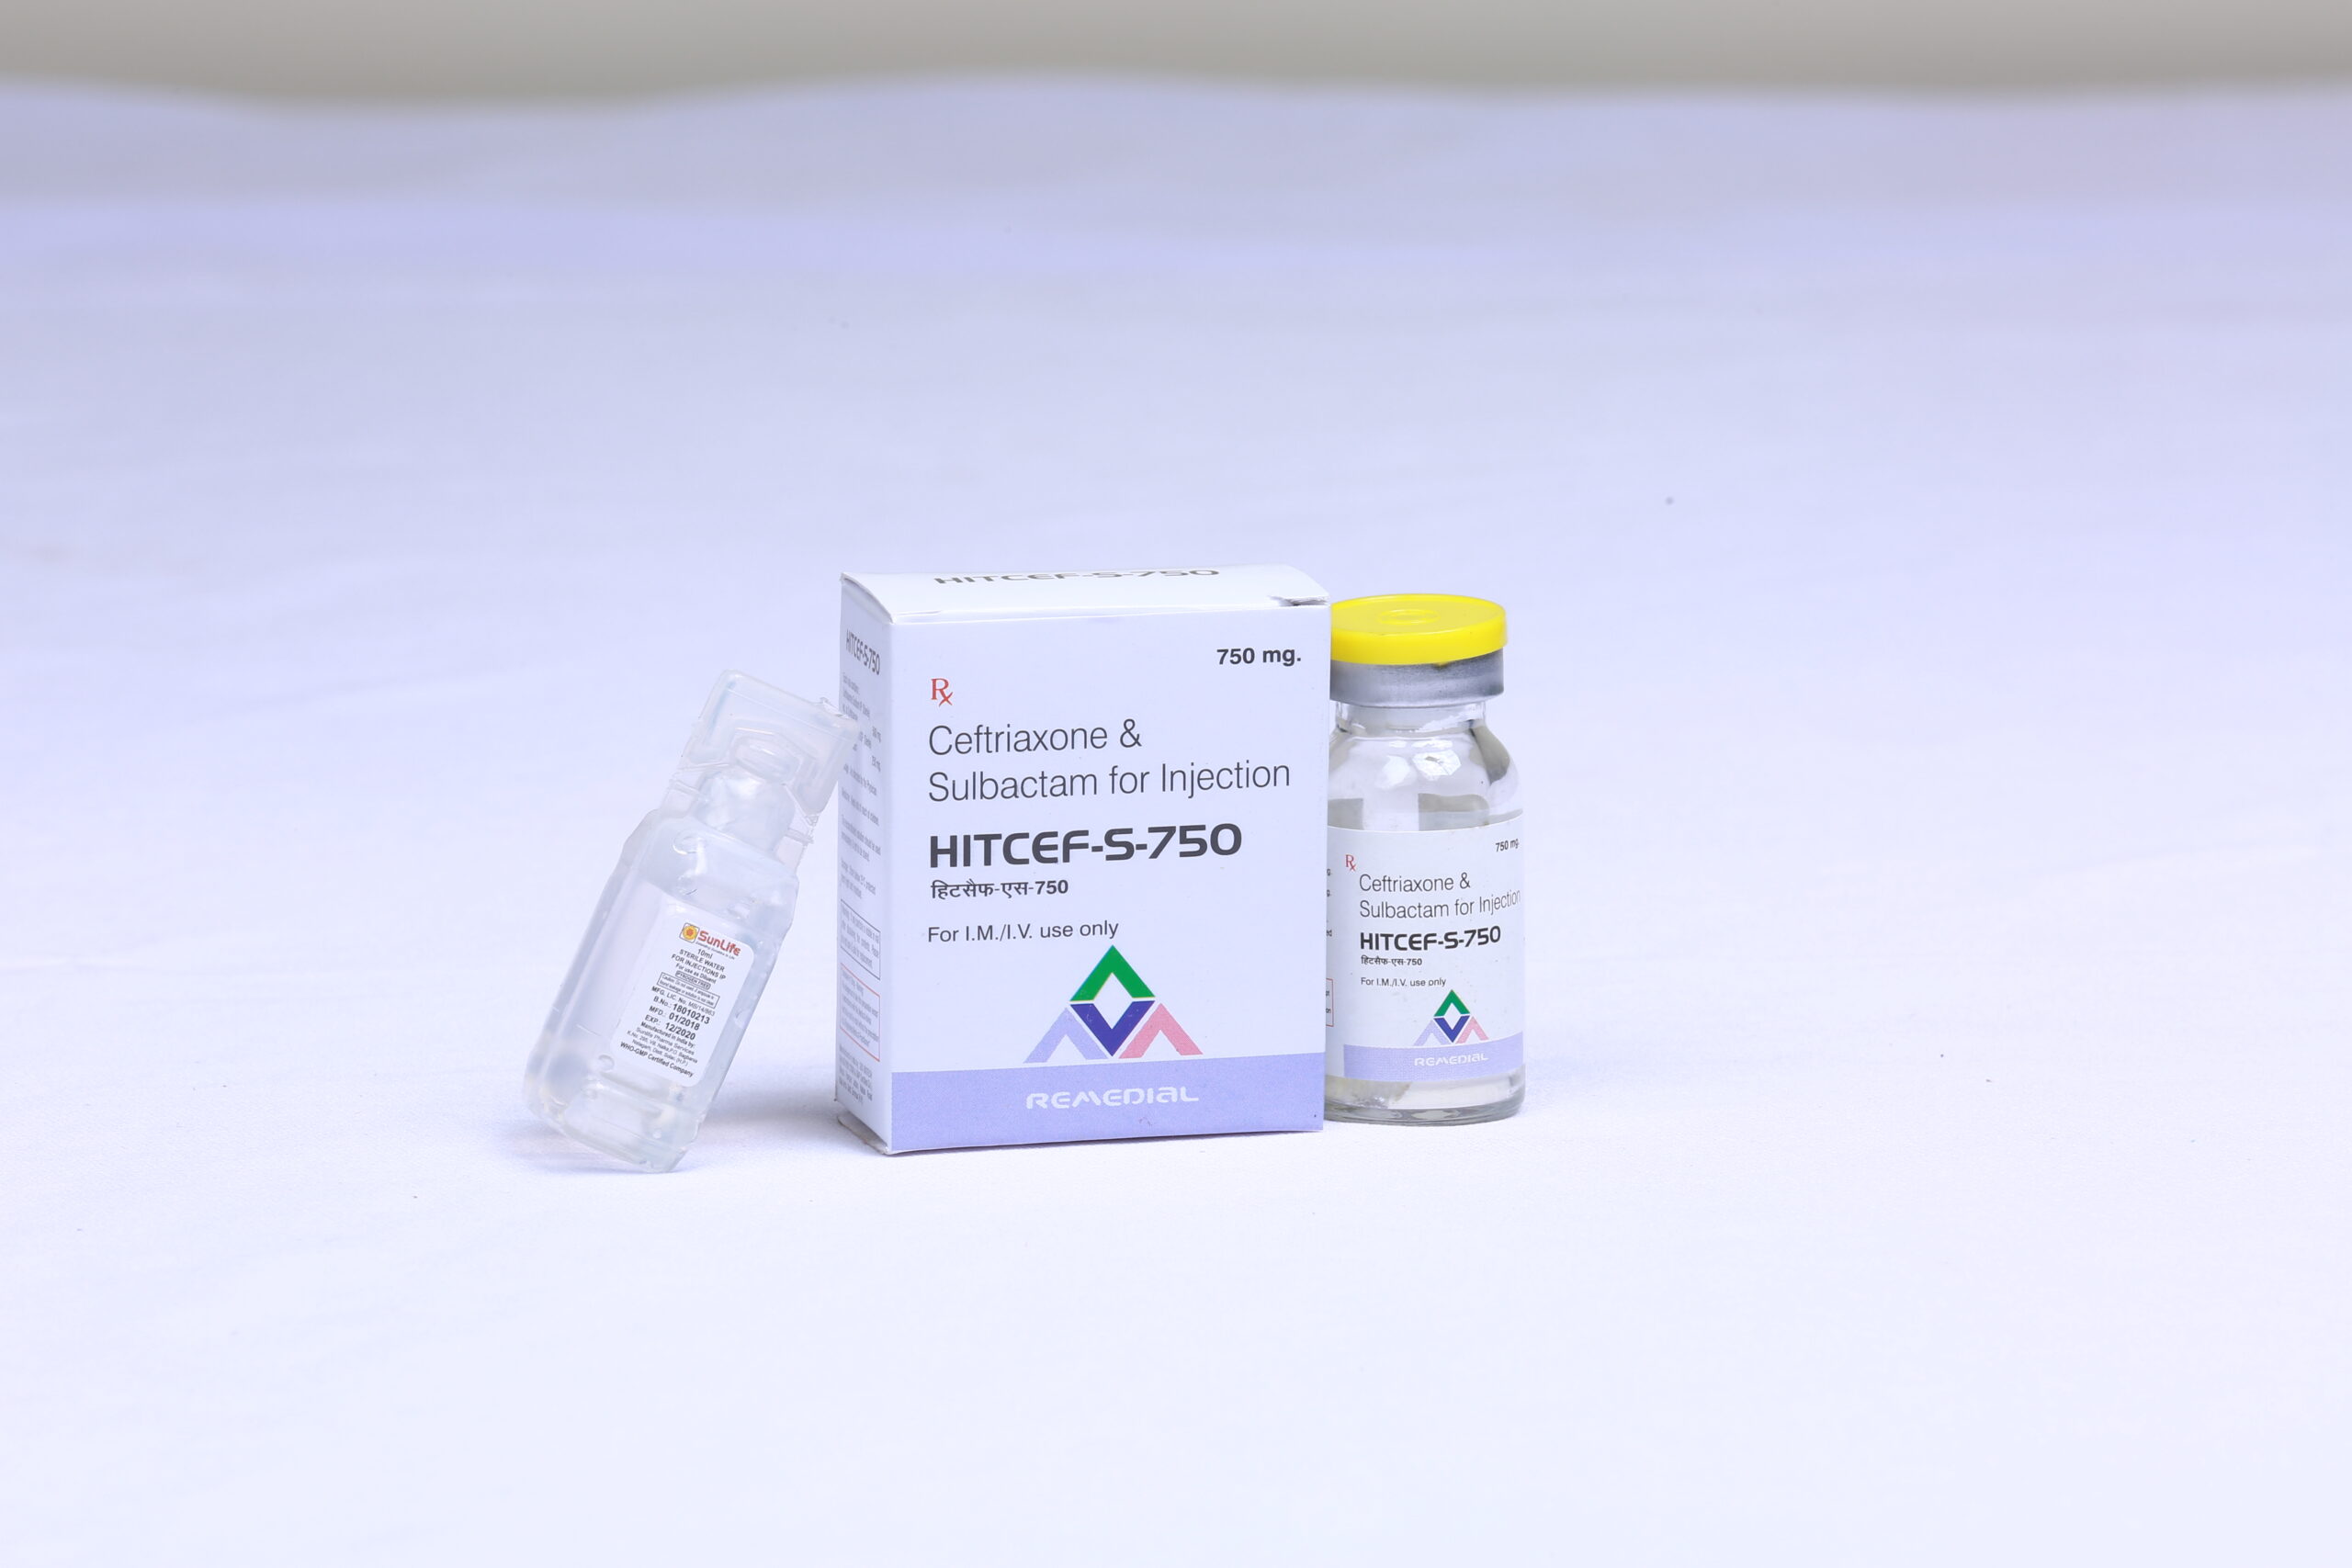 HITCEF-S 750 (Ceftriaxone 500mg + Sulbactum 250mg)